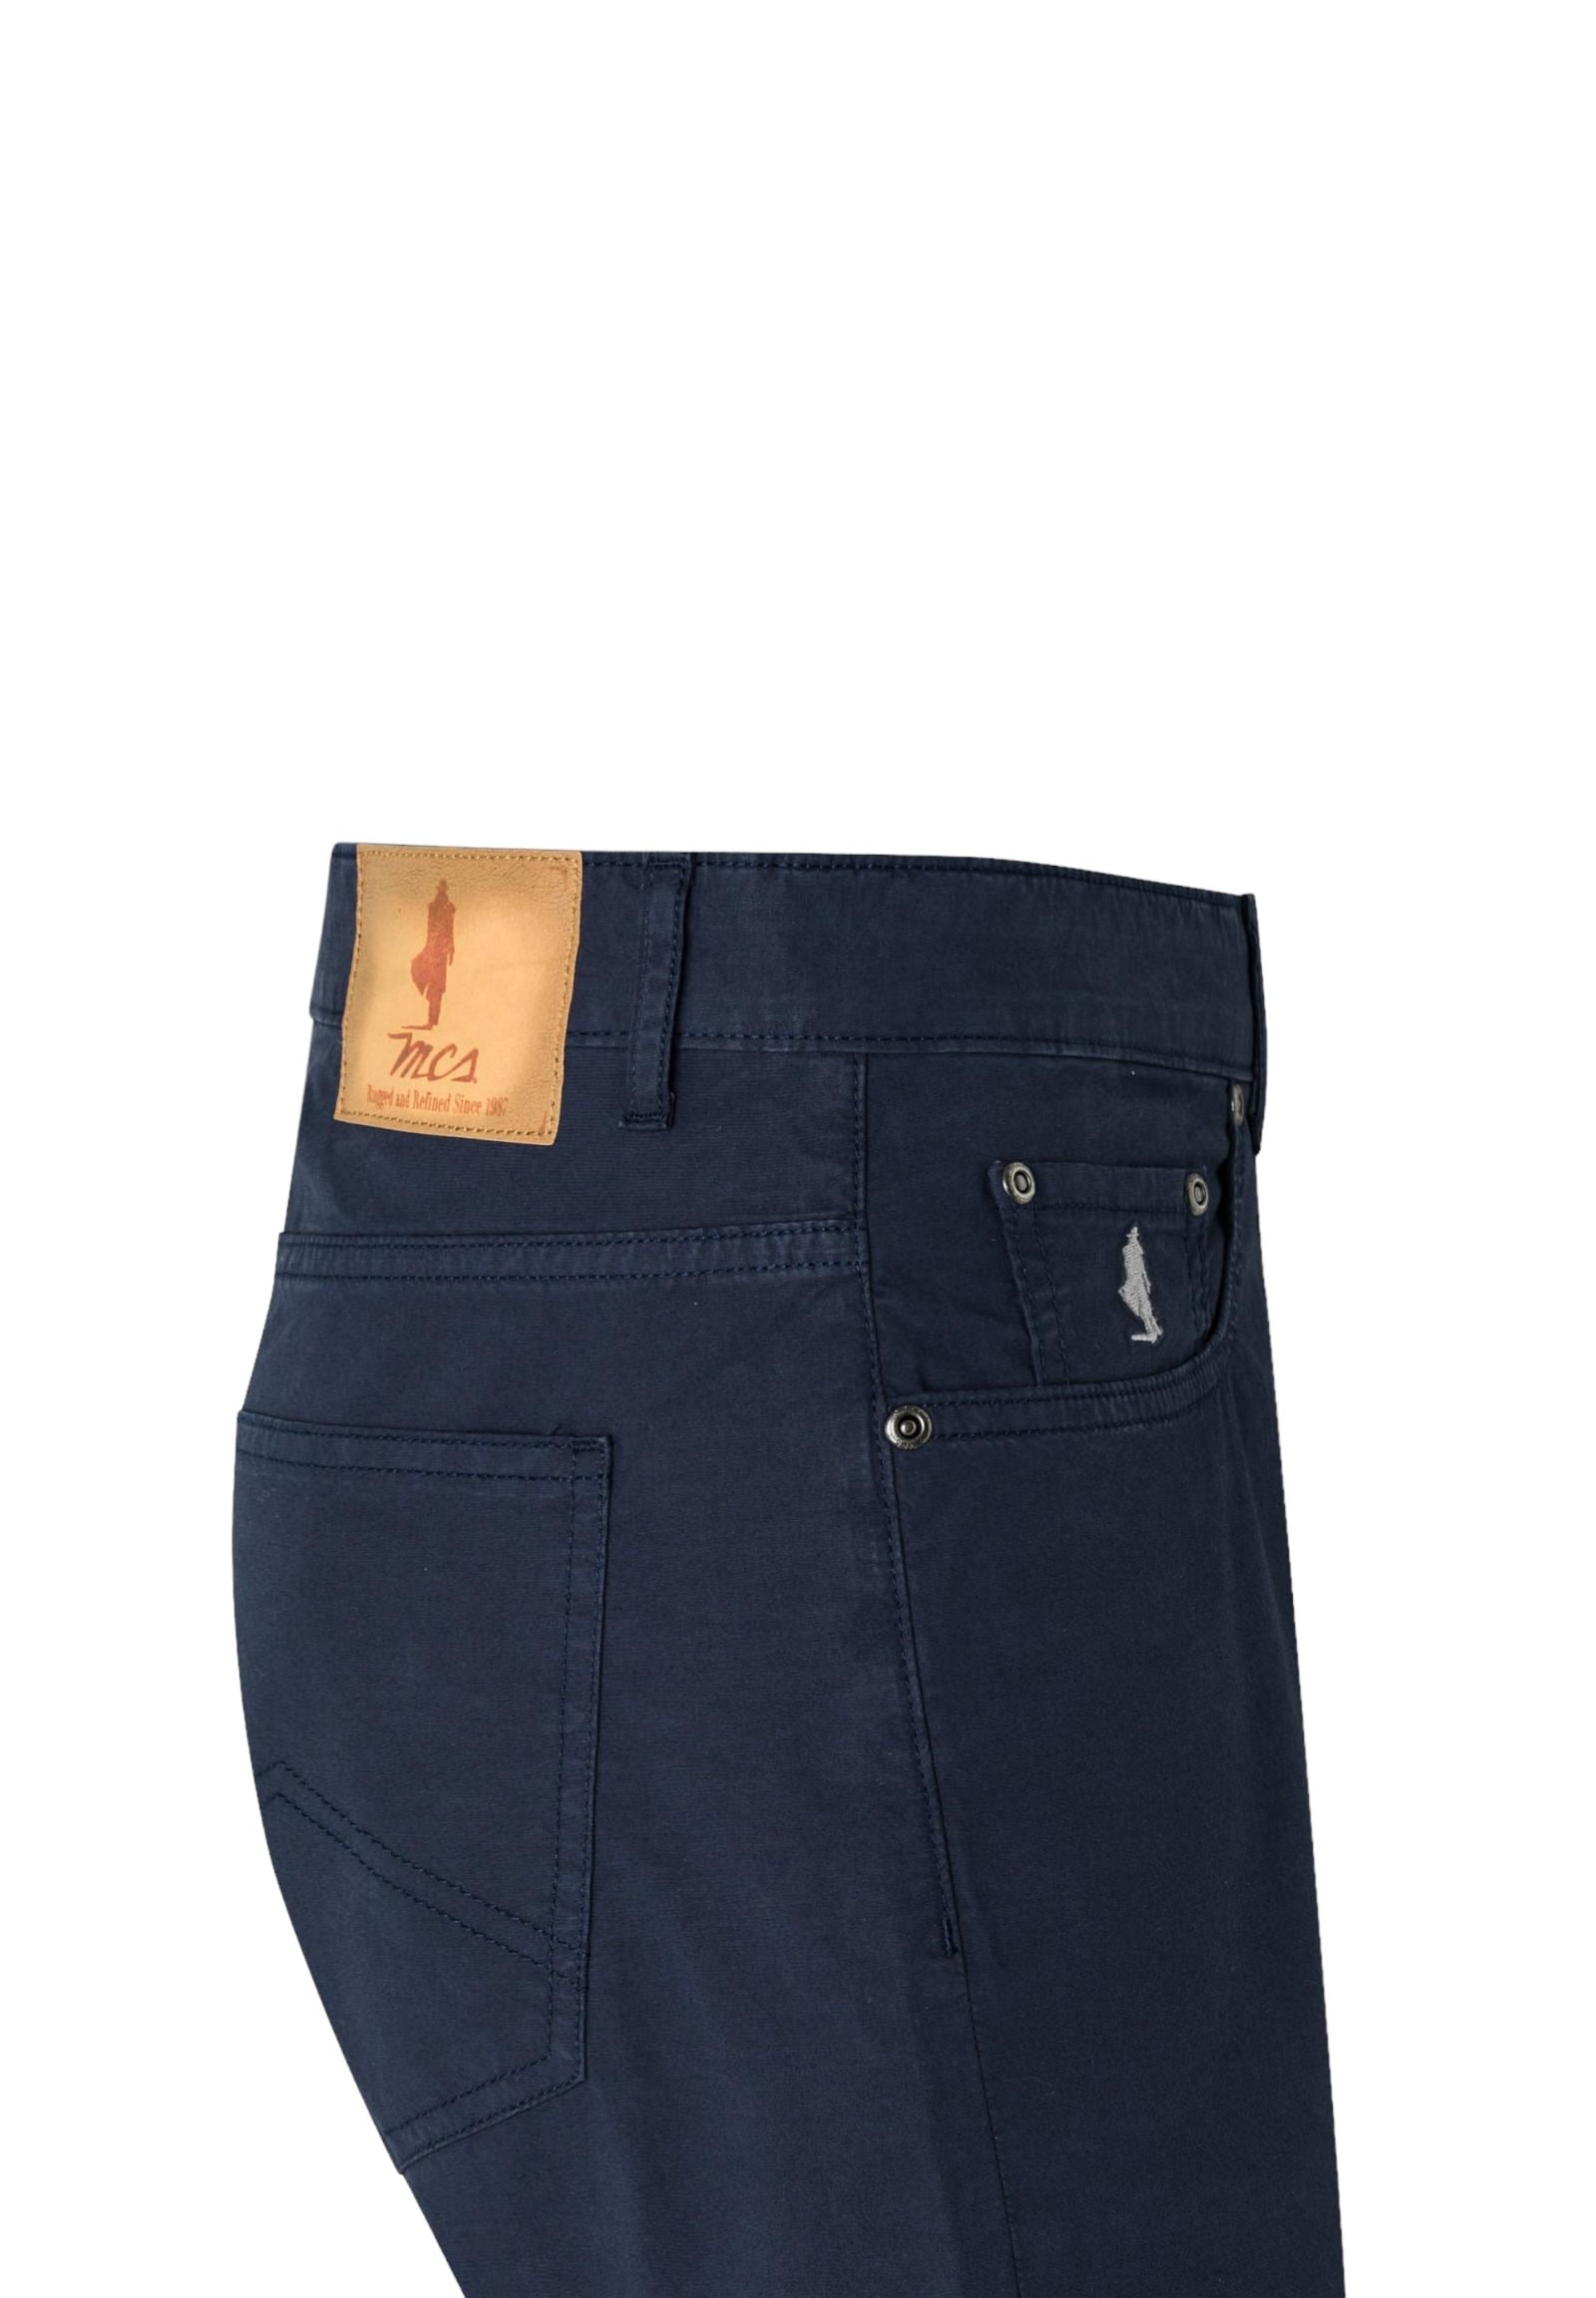 Mcs Pantaloni 10m5p100-02101 Navy Blue